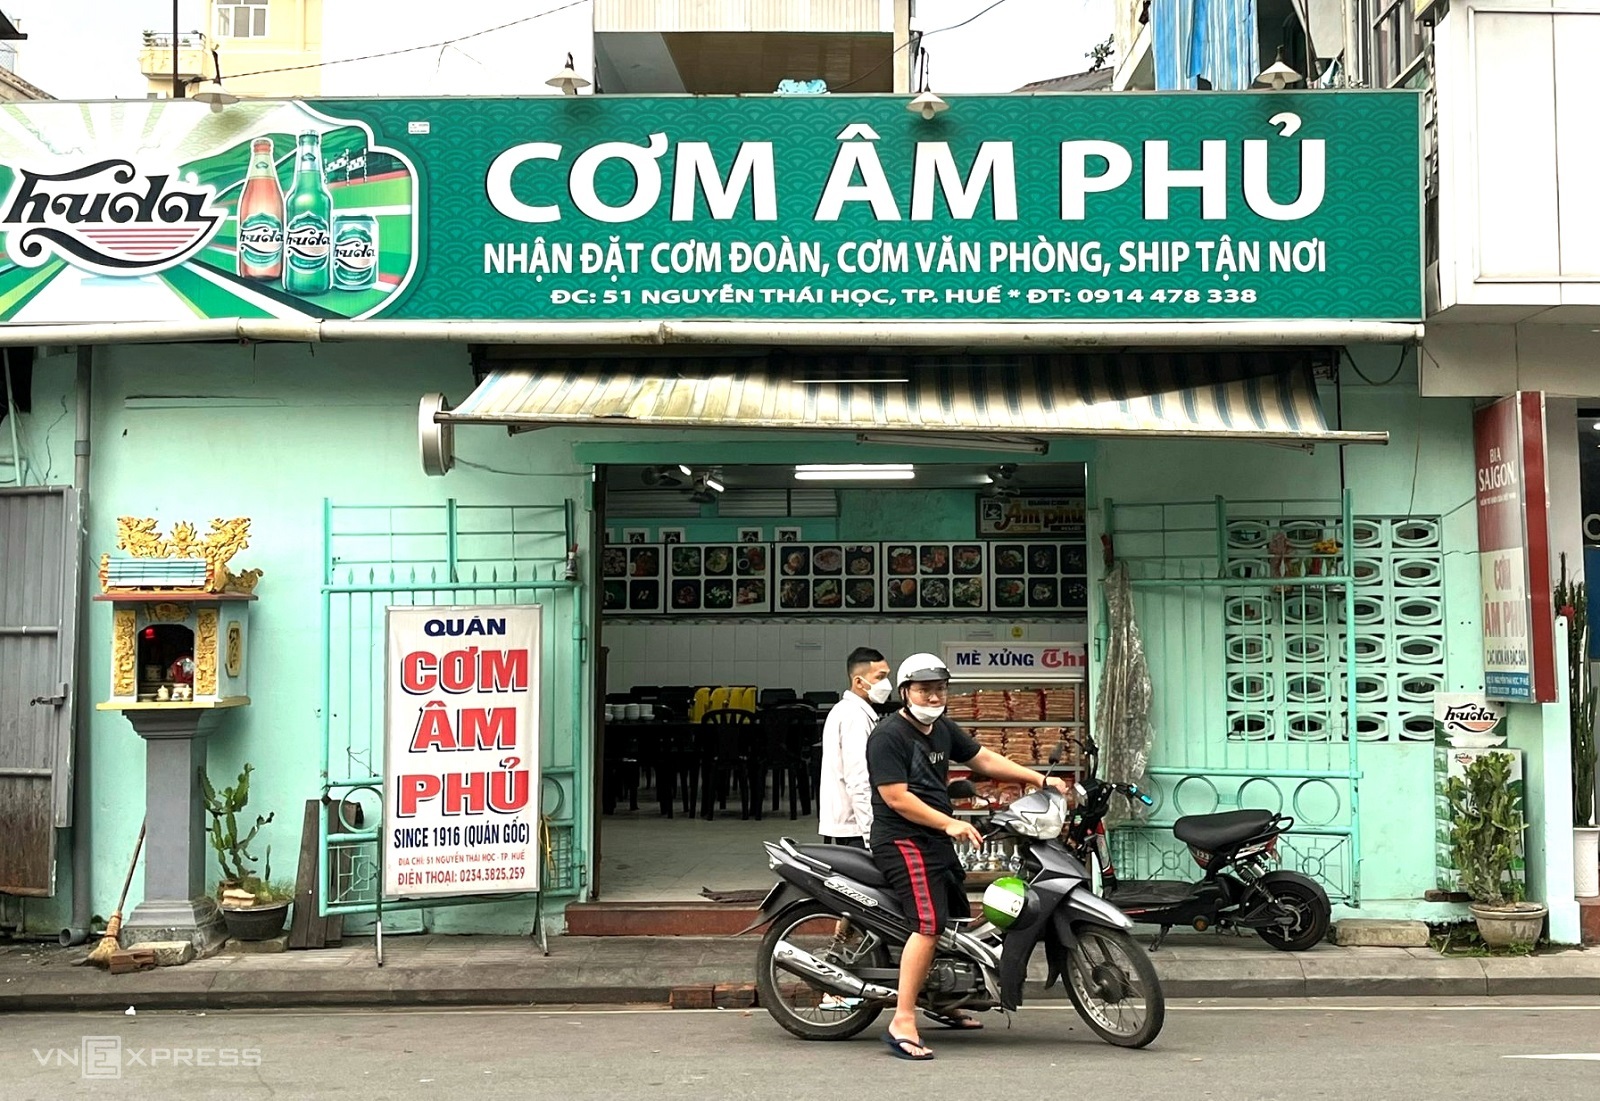 com-am-phu-nguyen-thai-hoc